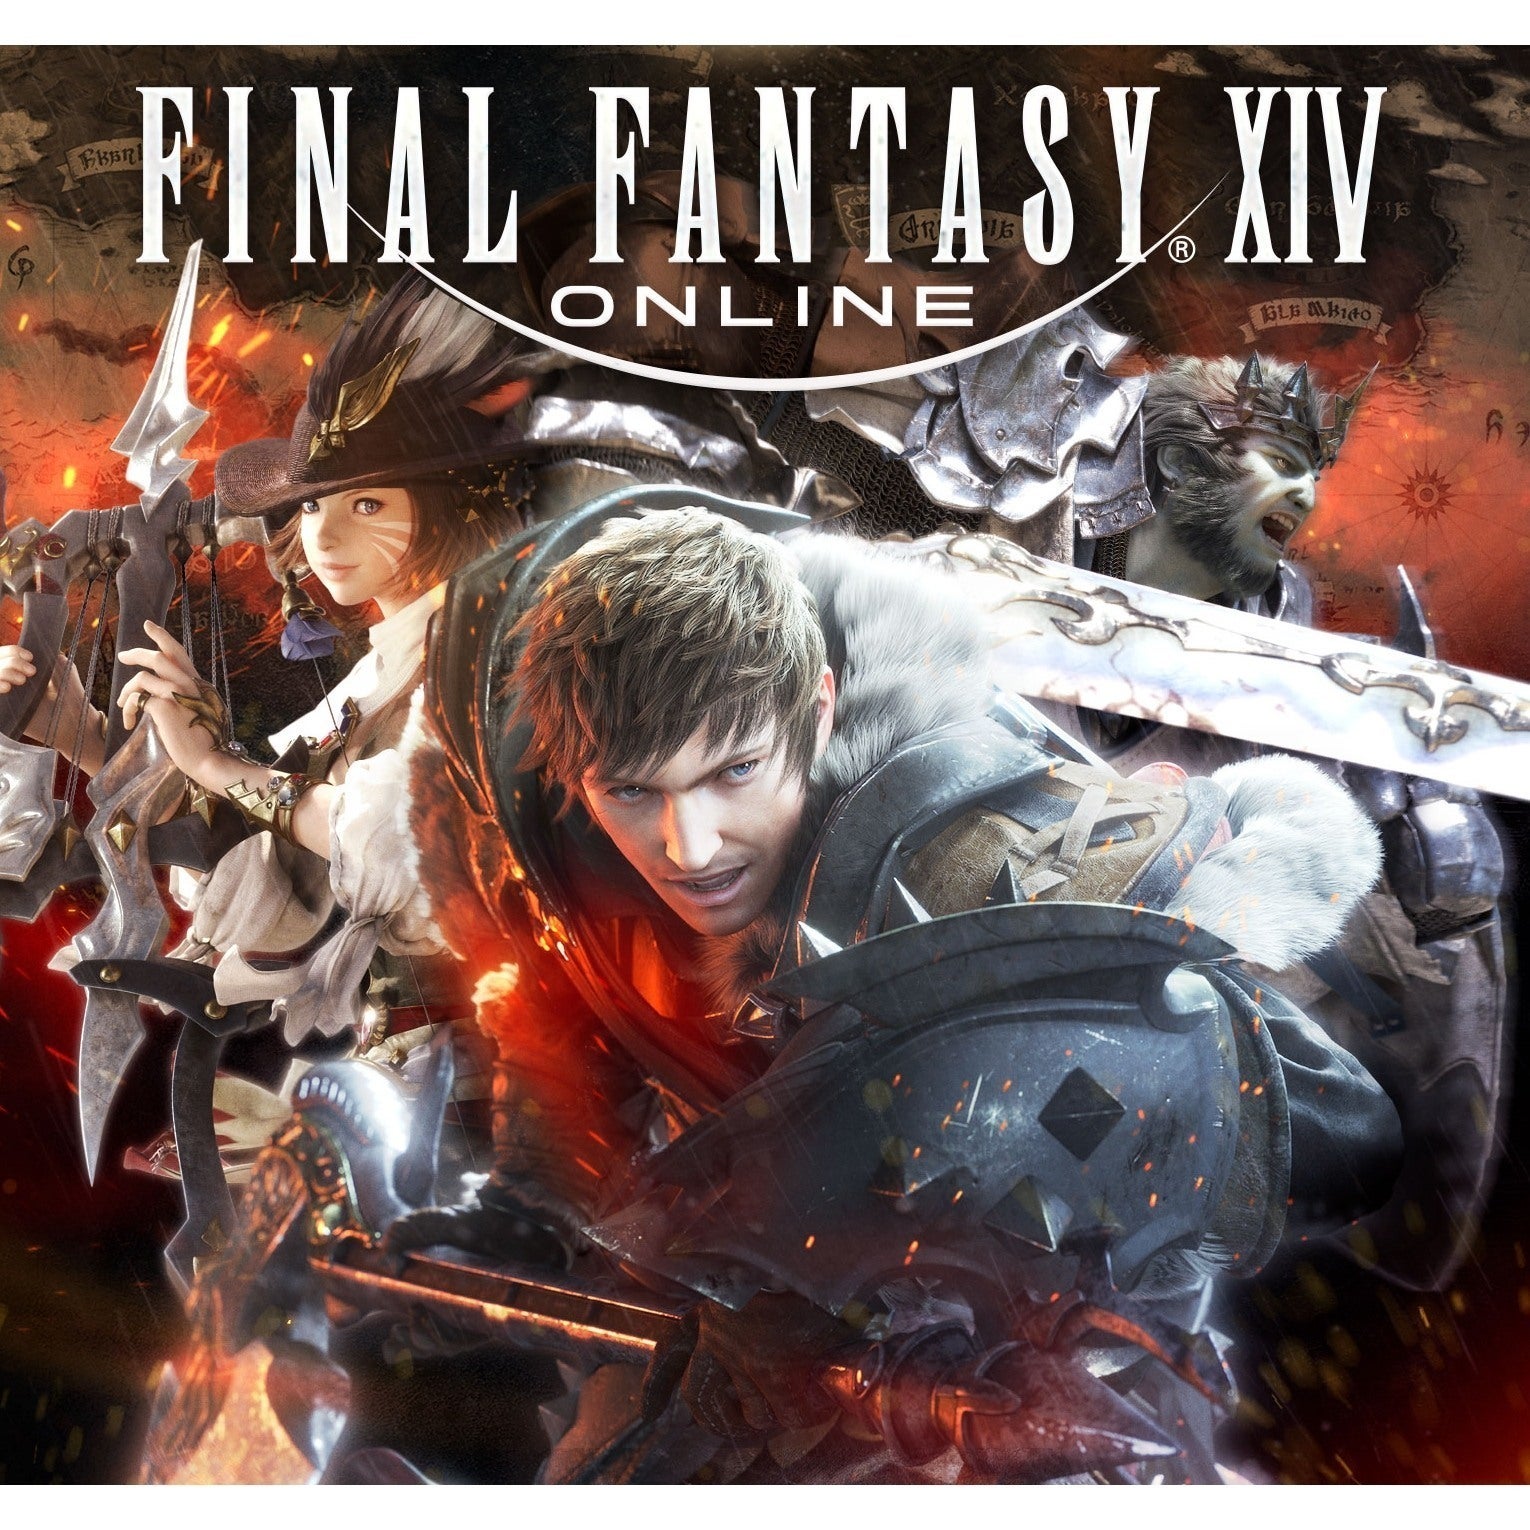 65a6793868c74 Final Fantasy Xiv Online: Guia Definitivo, Como Jogar, Personagens E Tudo Sobre O Game